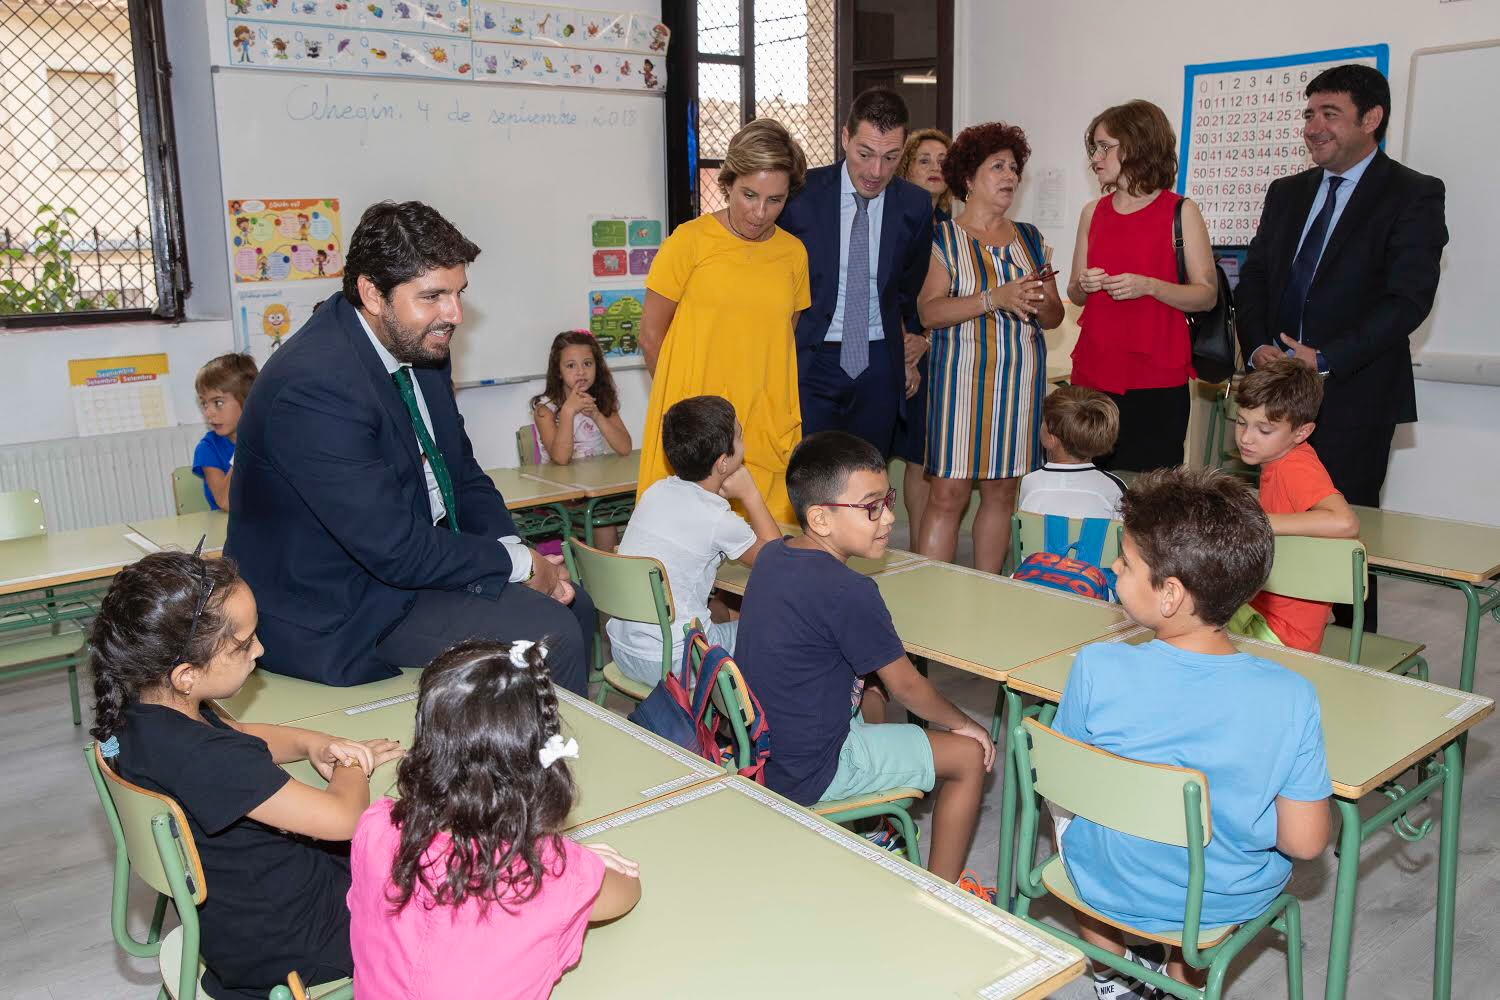 El presidente visita dos colegios de Cehegín, primer municipio de España en comenzar el curso escolar